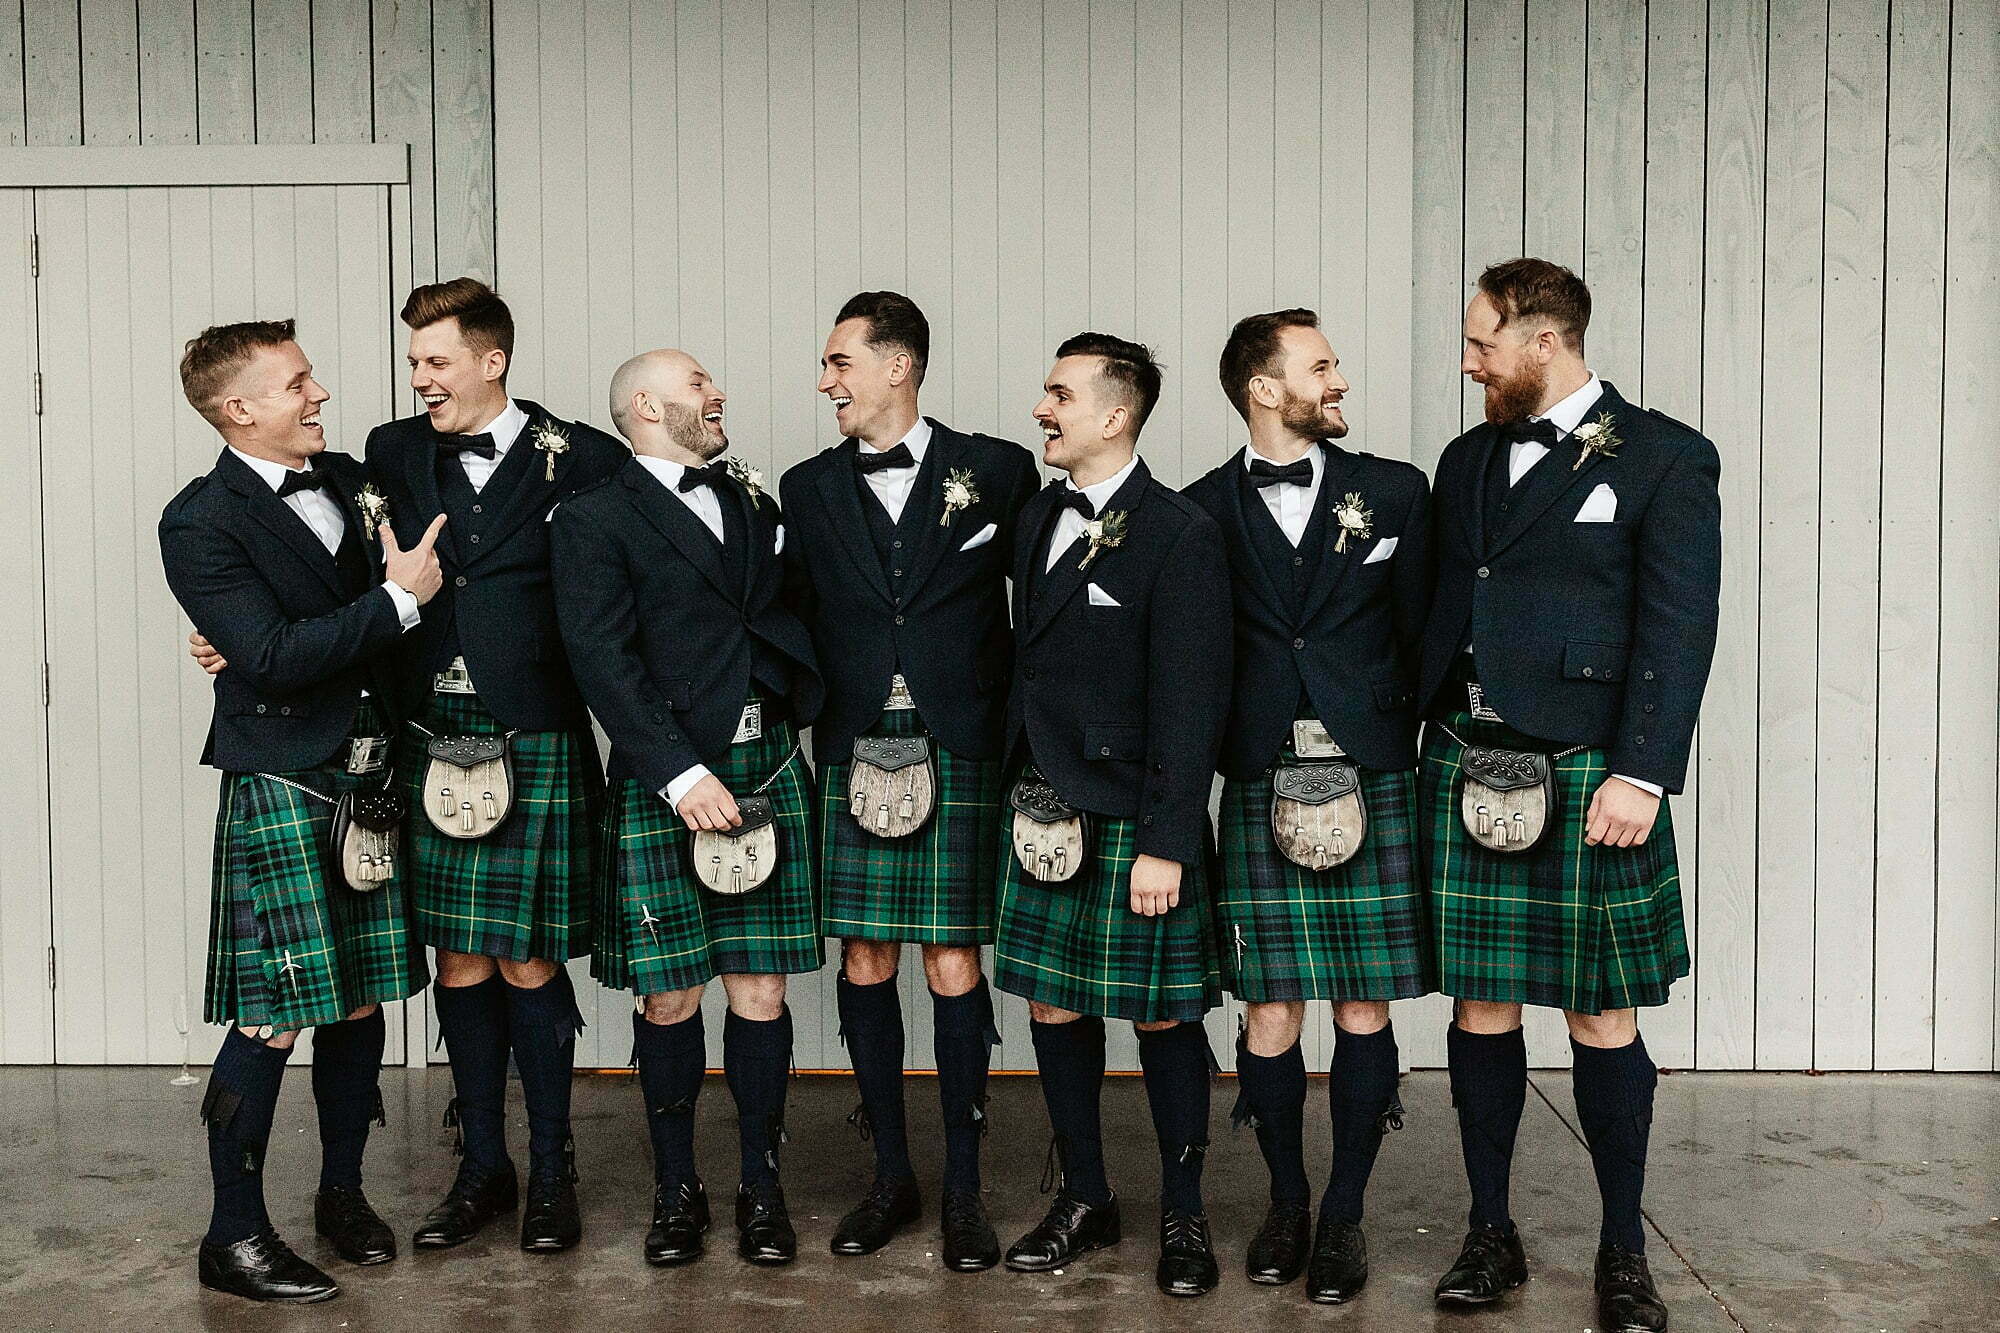 guardswell farm winter wedding groomsmen slaters menswear kilts